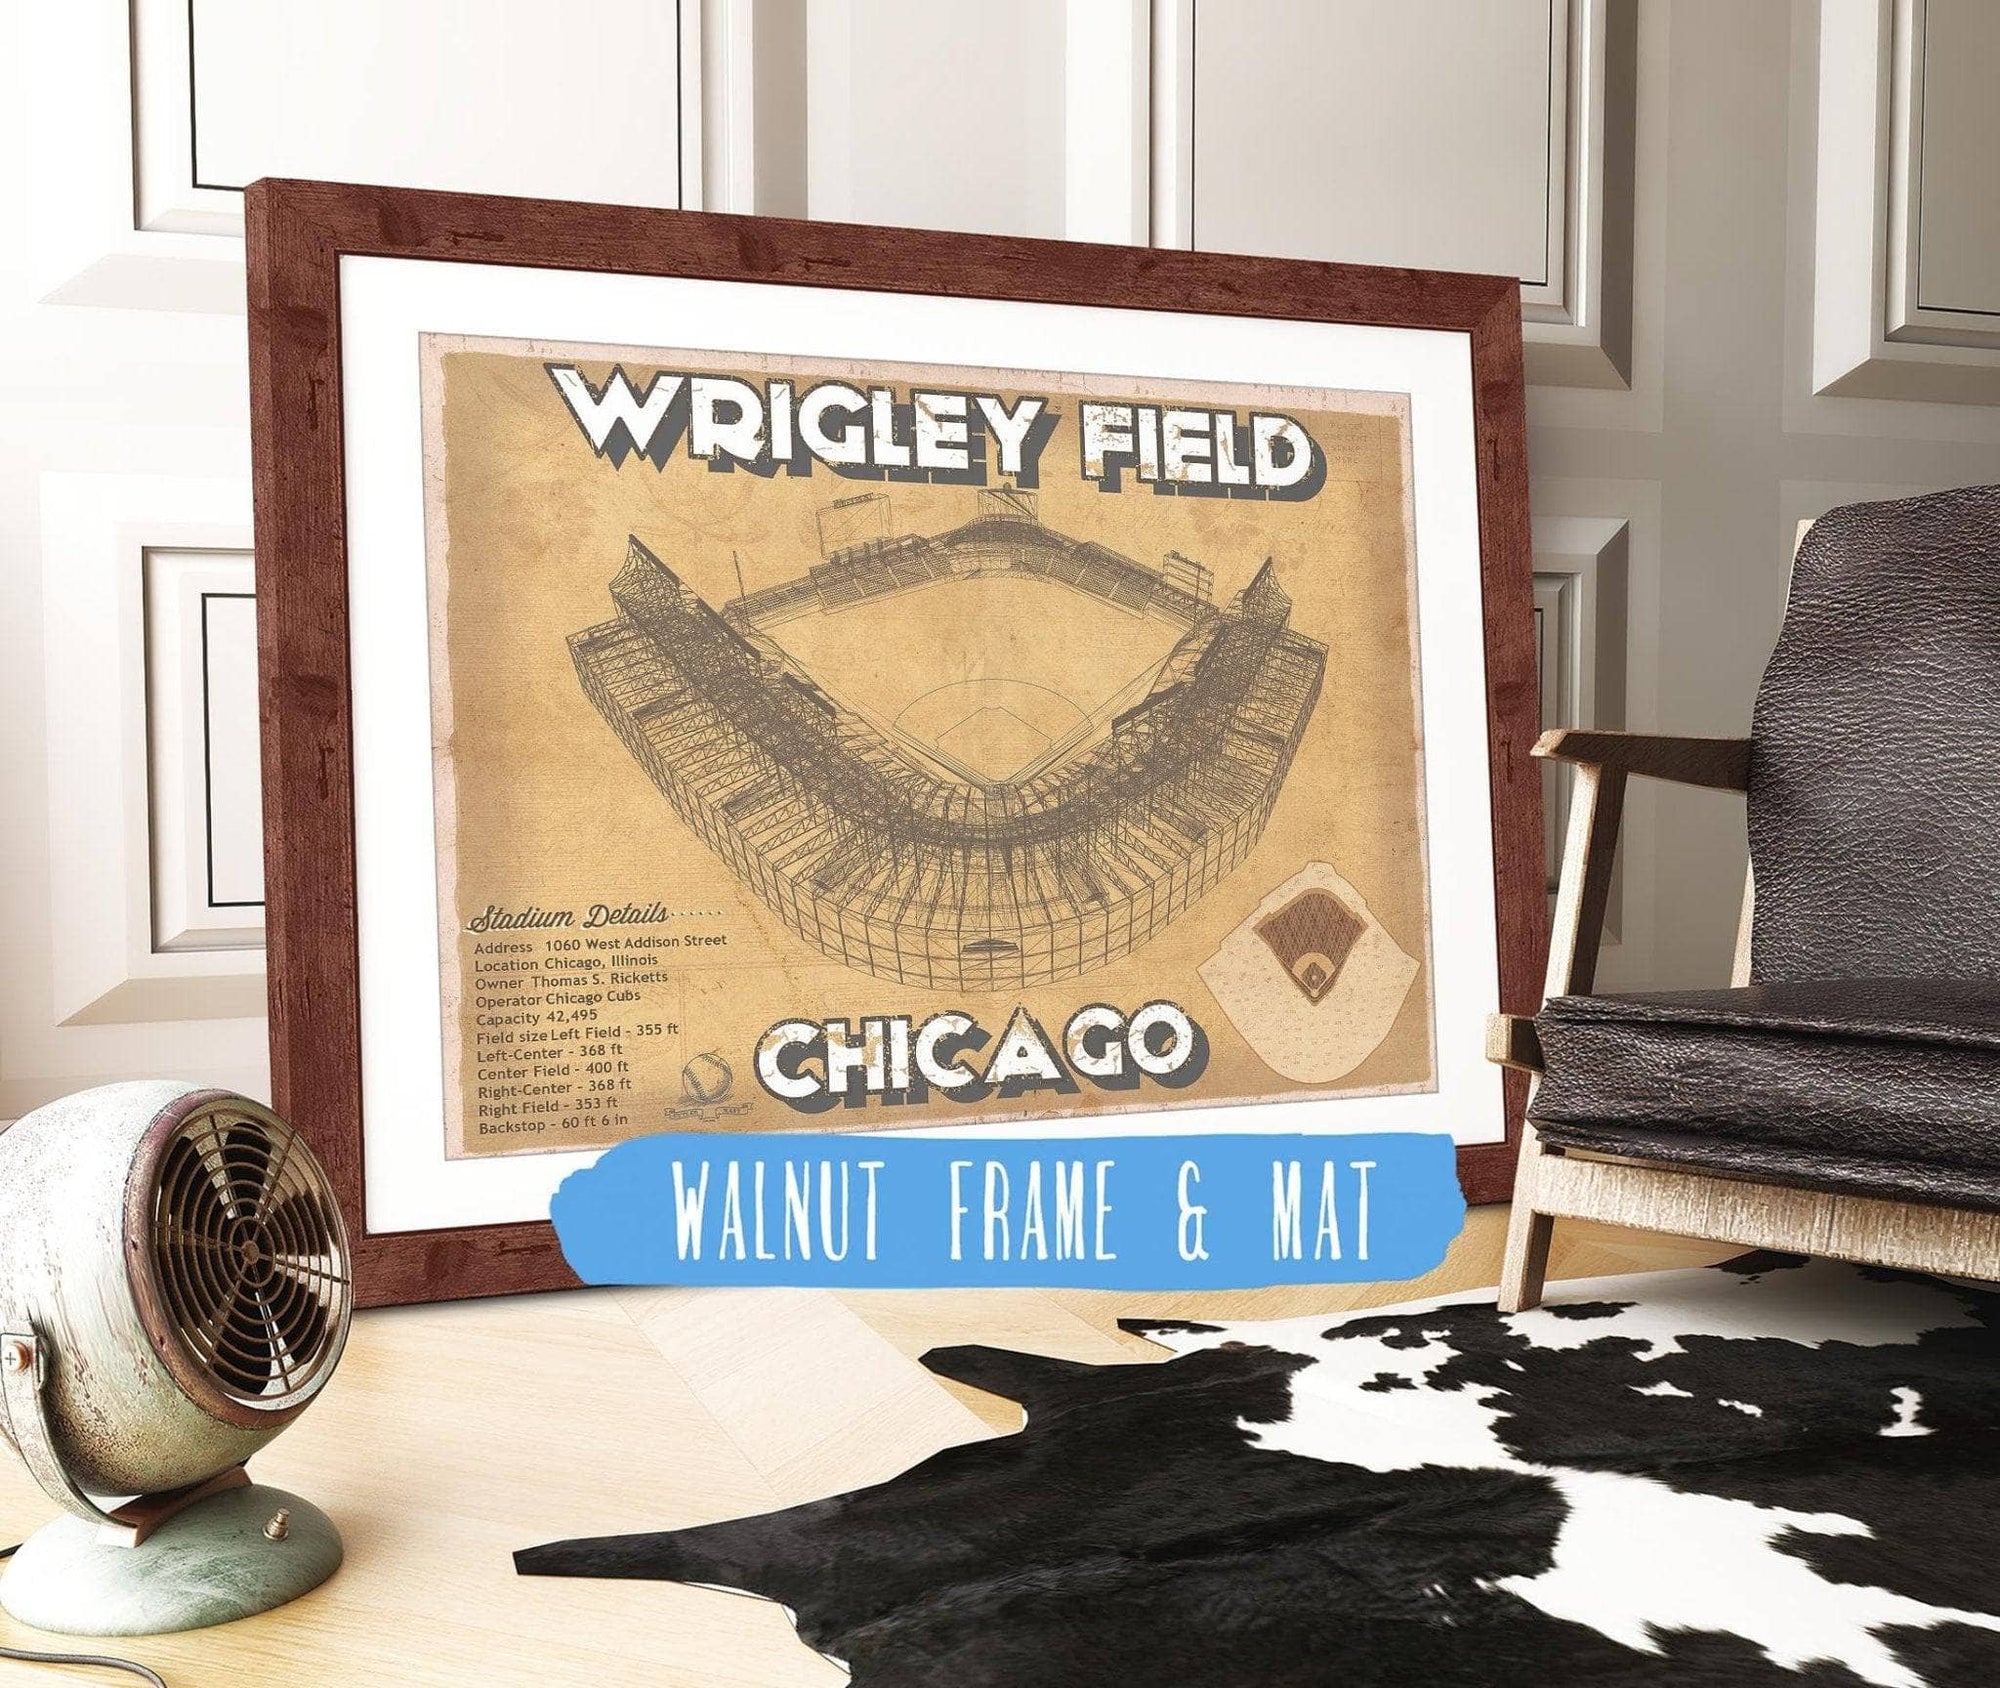 Cutler West 14" x 11" / Walnut Frame & Mat Wrigley Field Print - Chicago Cubs Baseball Print 703108870-14"-x-11"6797